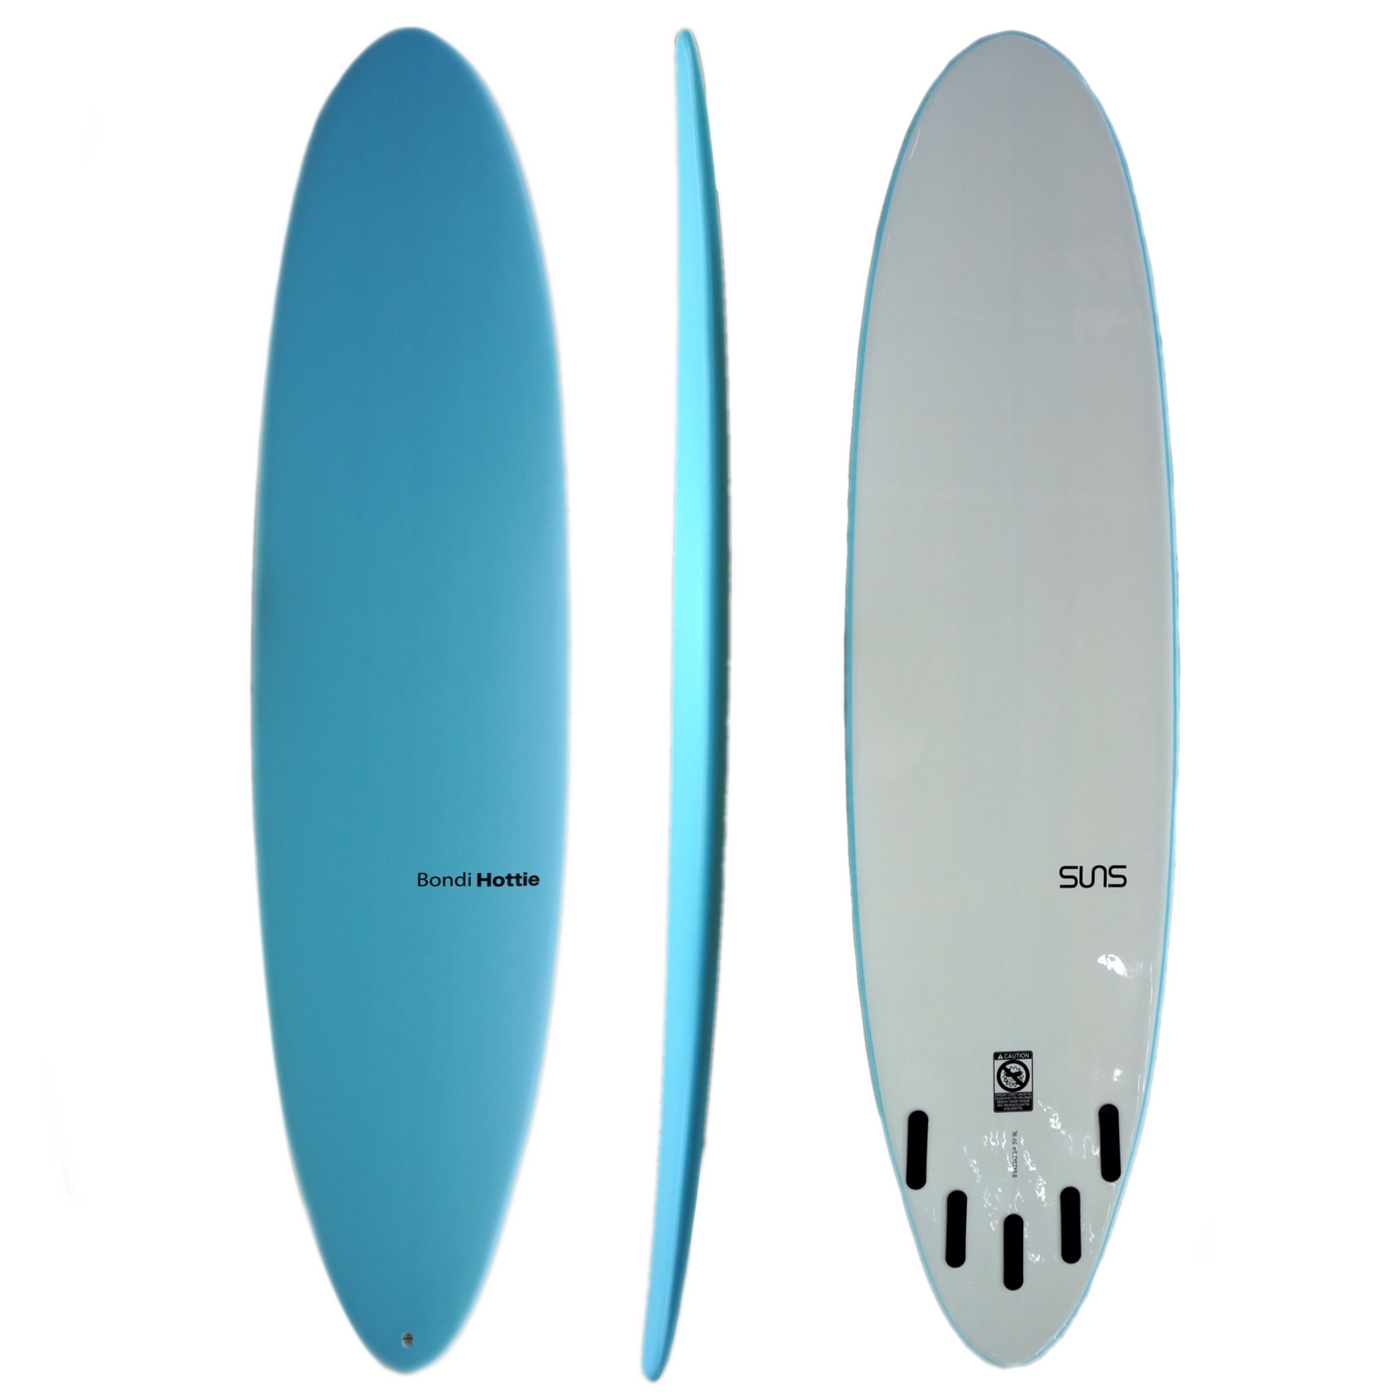 Bondi Hottie in Blue 8' surfboard with foam top